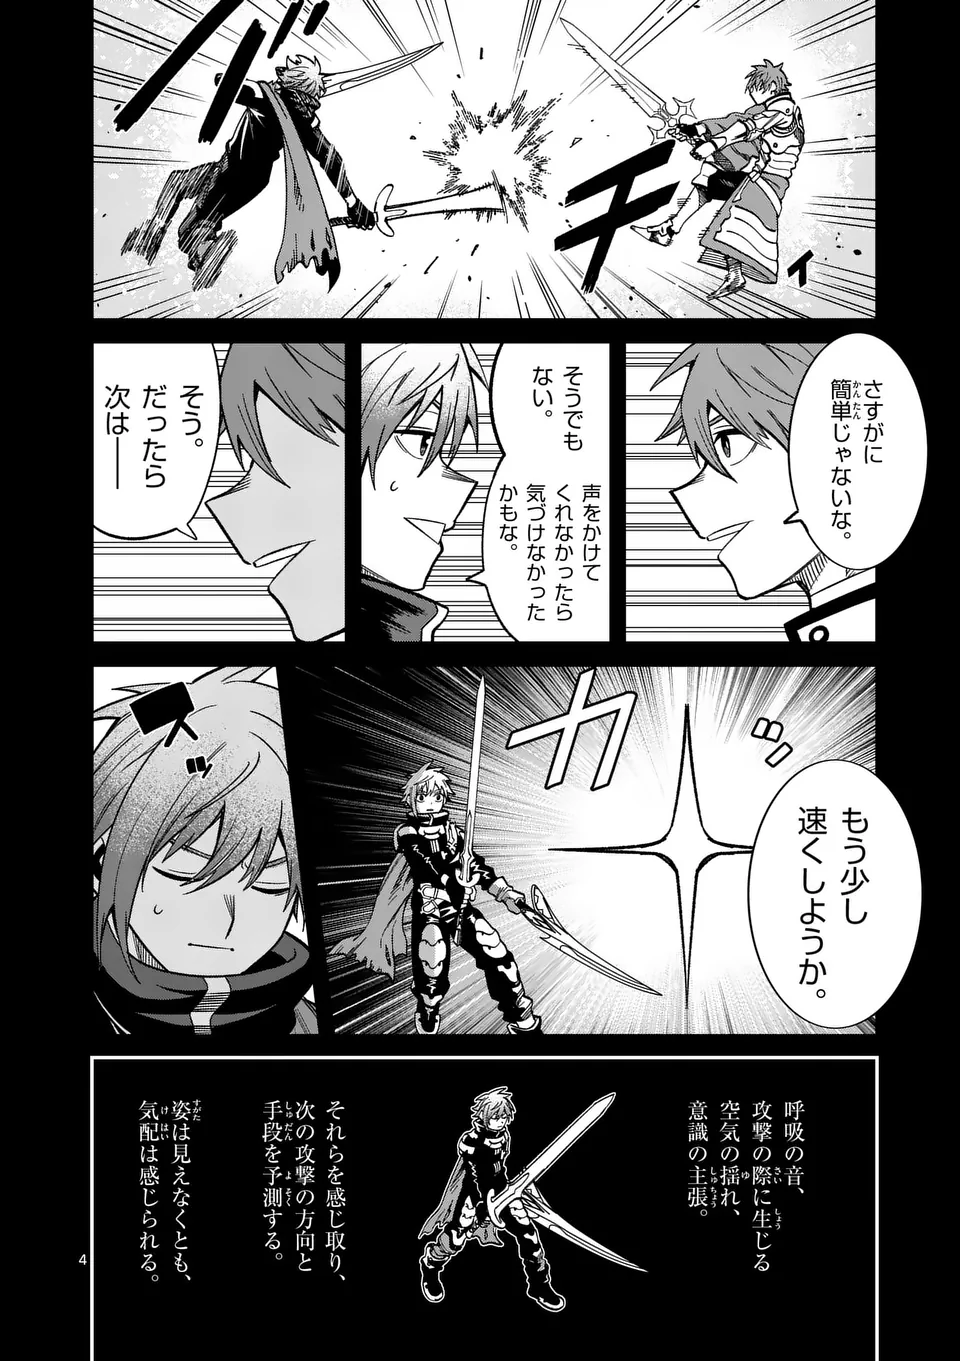 Power-Hara Genkai Yuusha, Maougun kara Koutaiguu de Scout sareru - Chapter 14 - Page 4